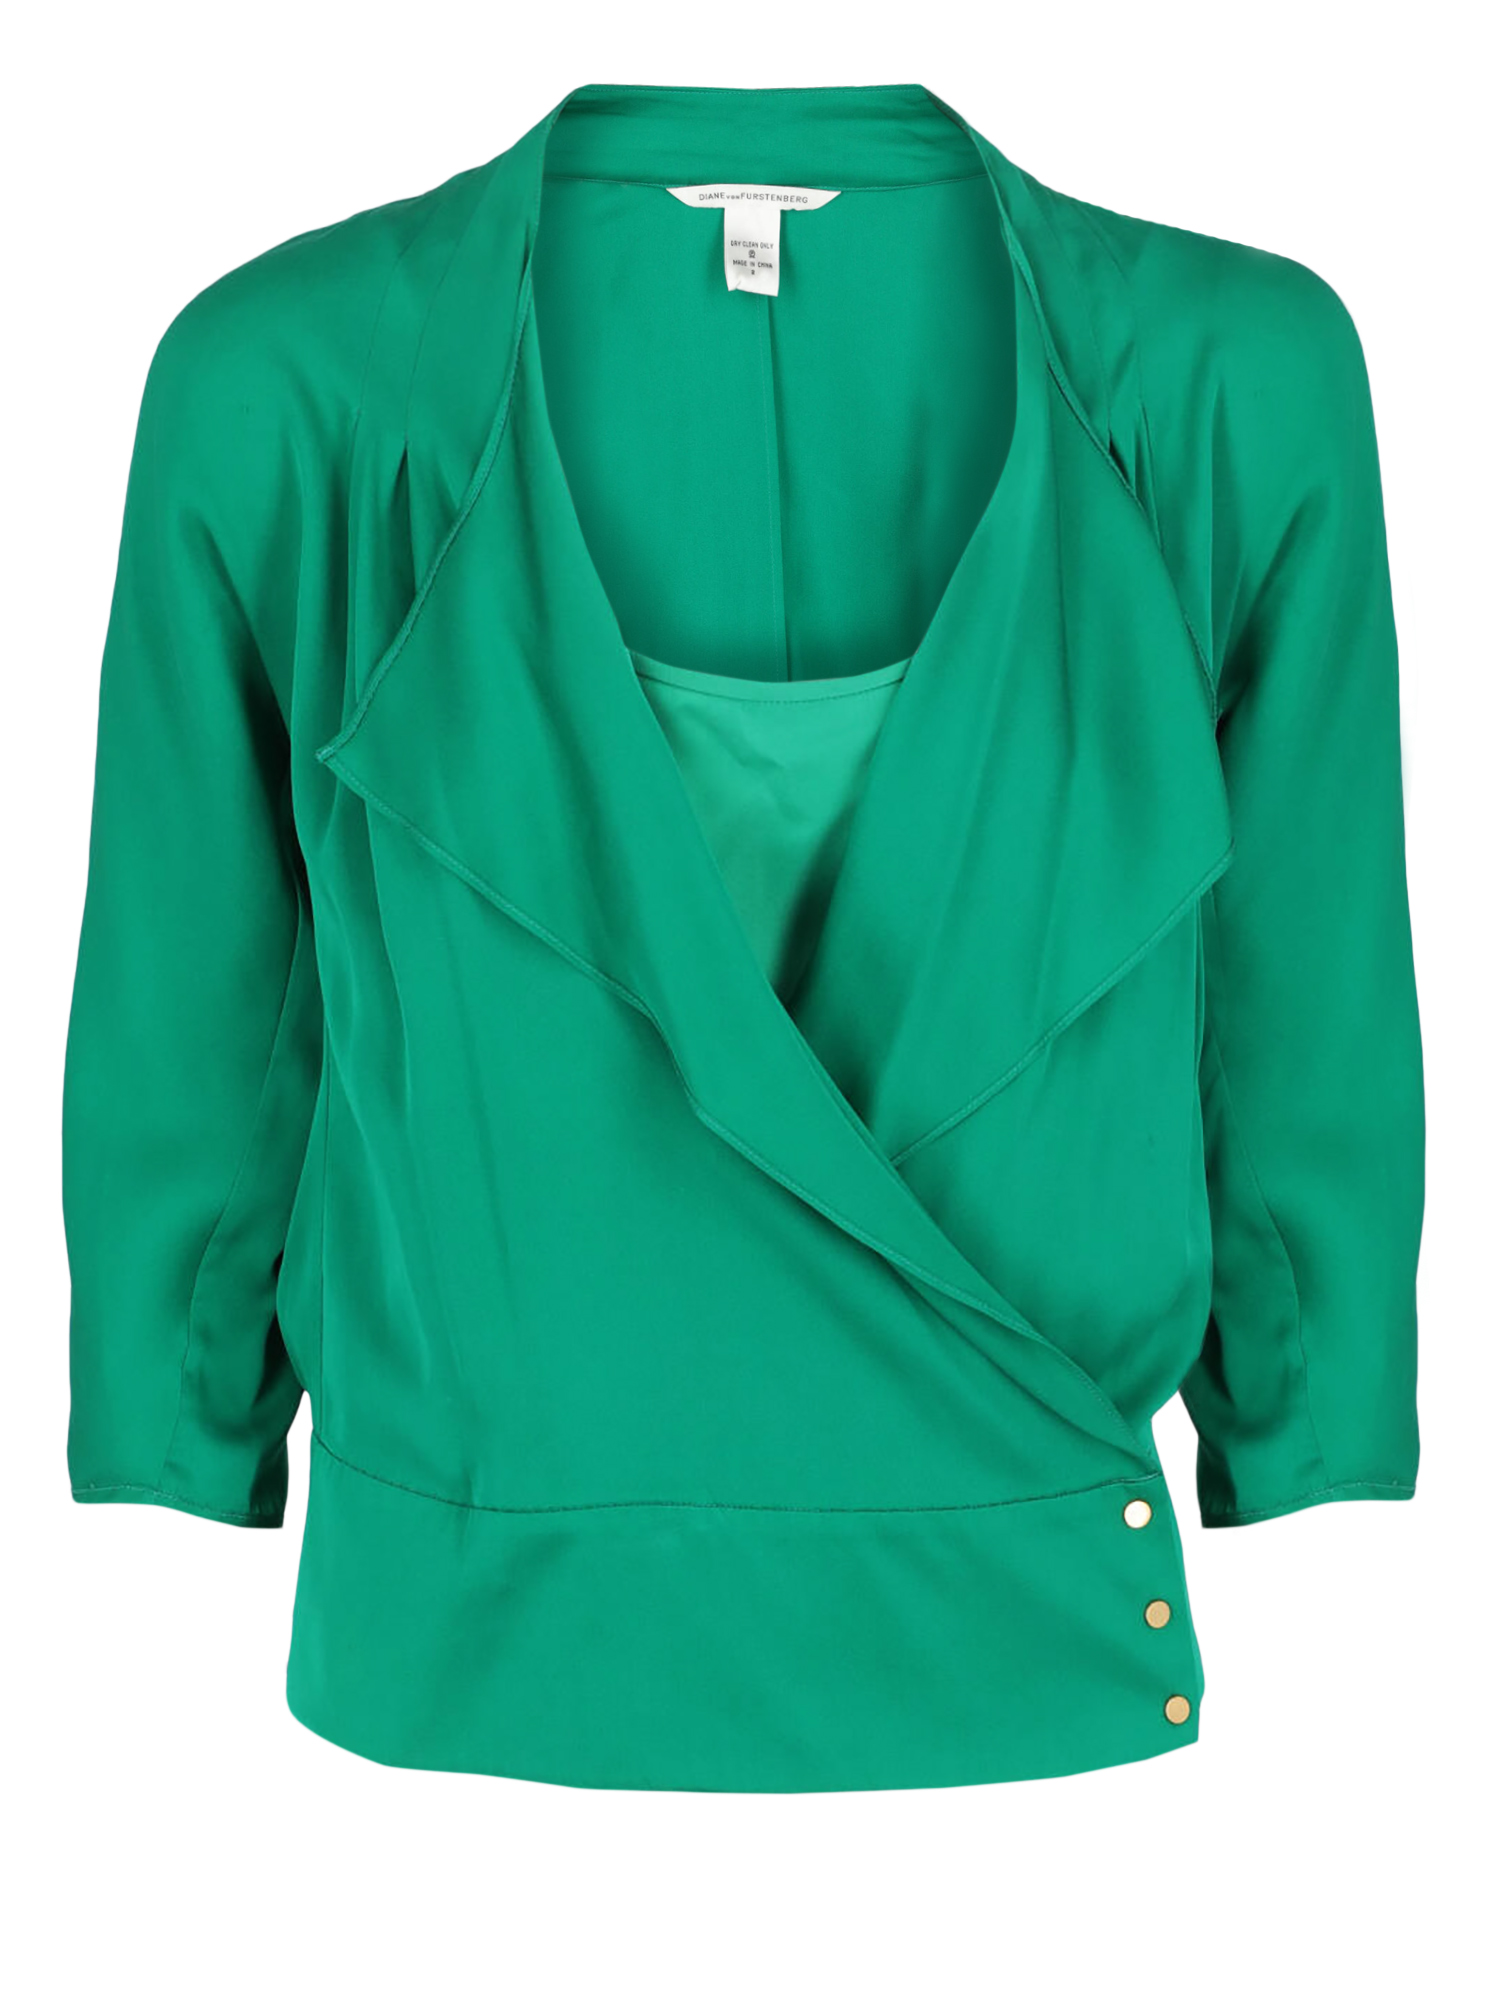 T-shirts Et Tops Pour Femme - Diane Von Furstenberg - En Synthetic Fibers Green - Taille:  -